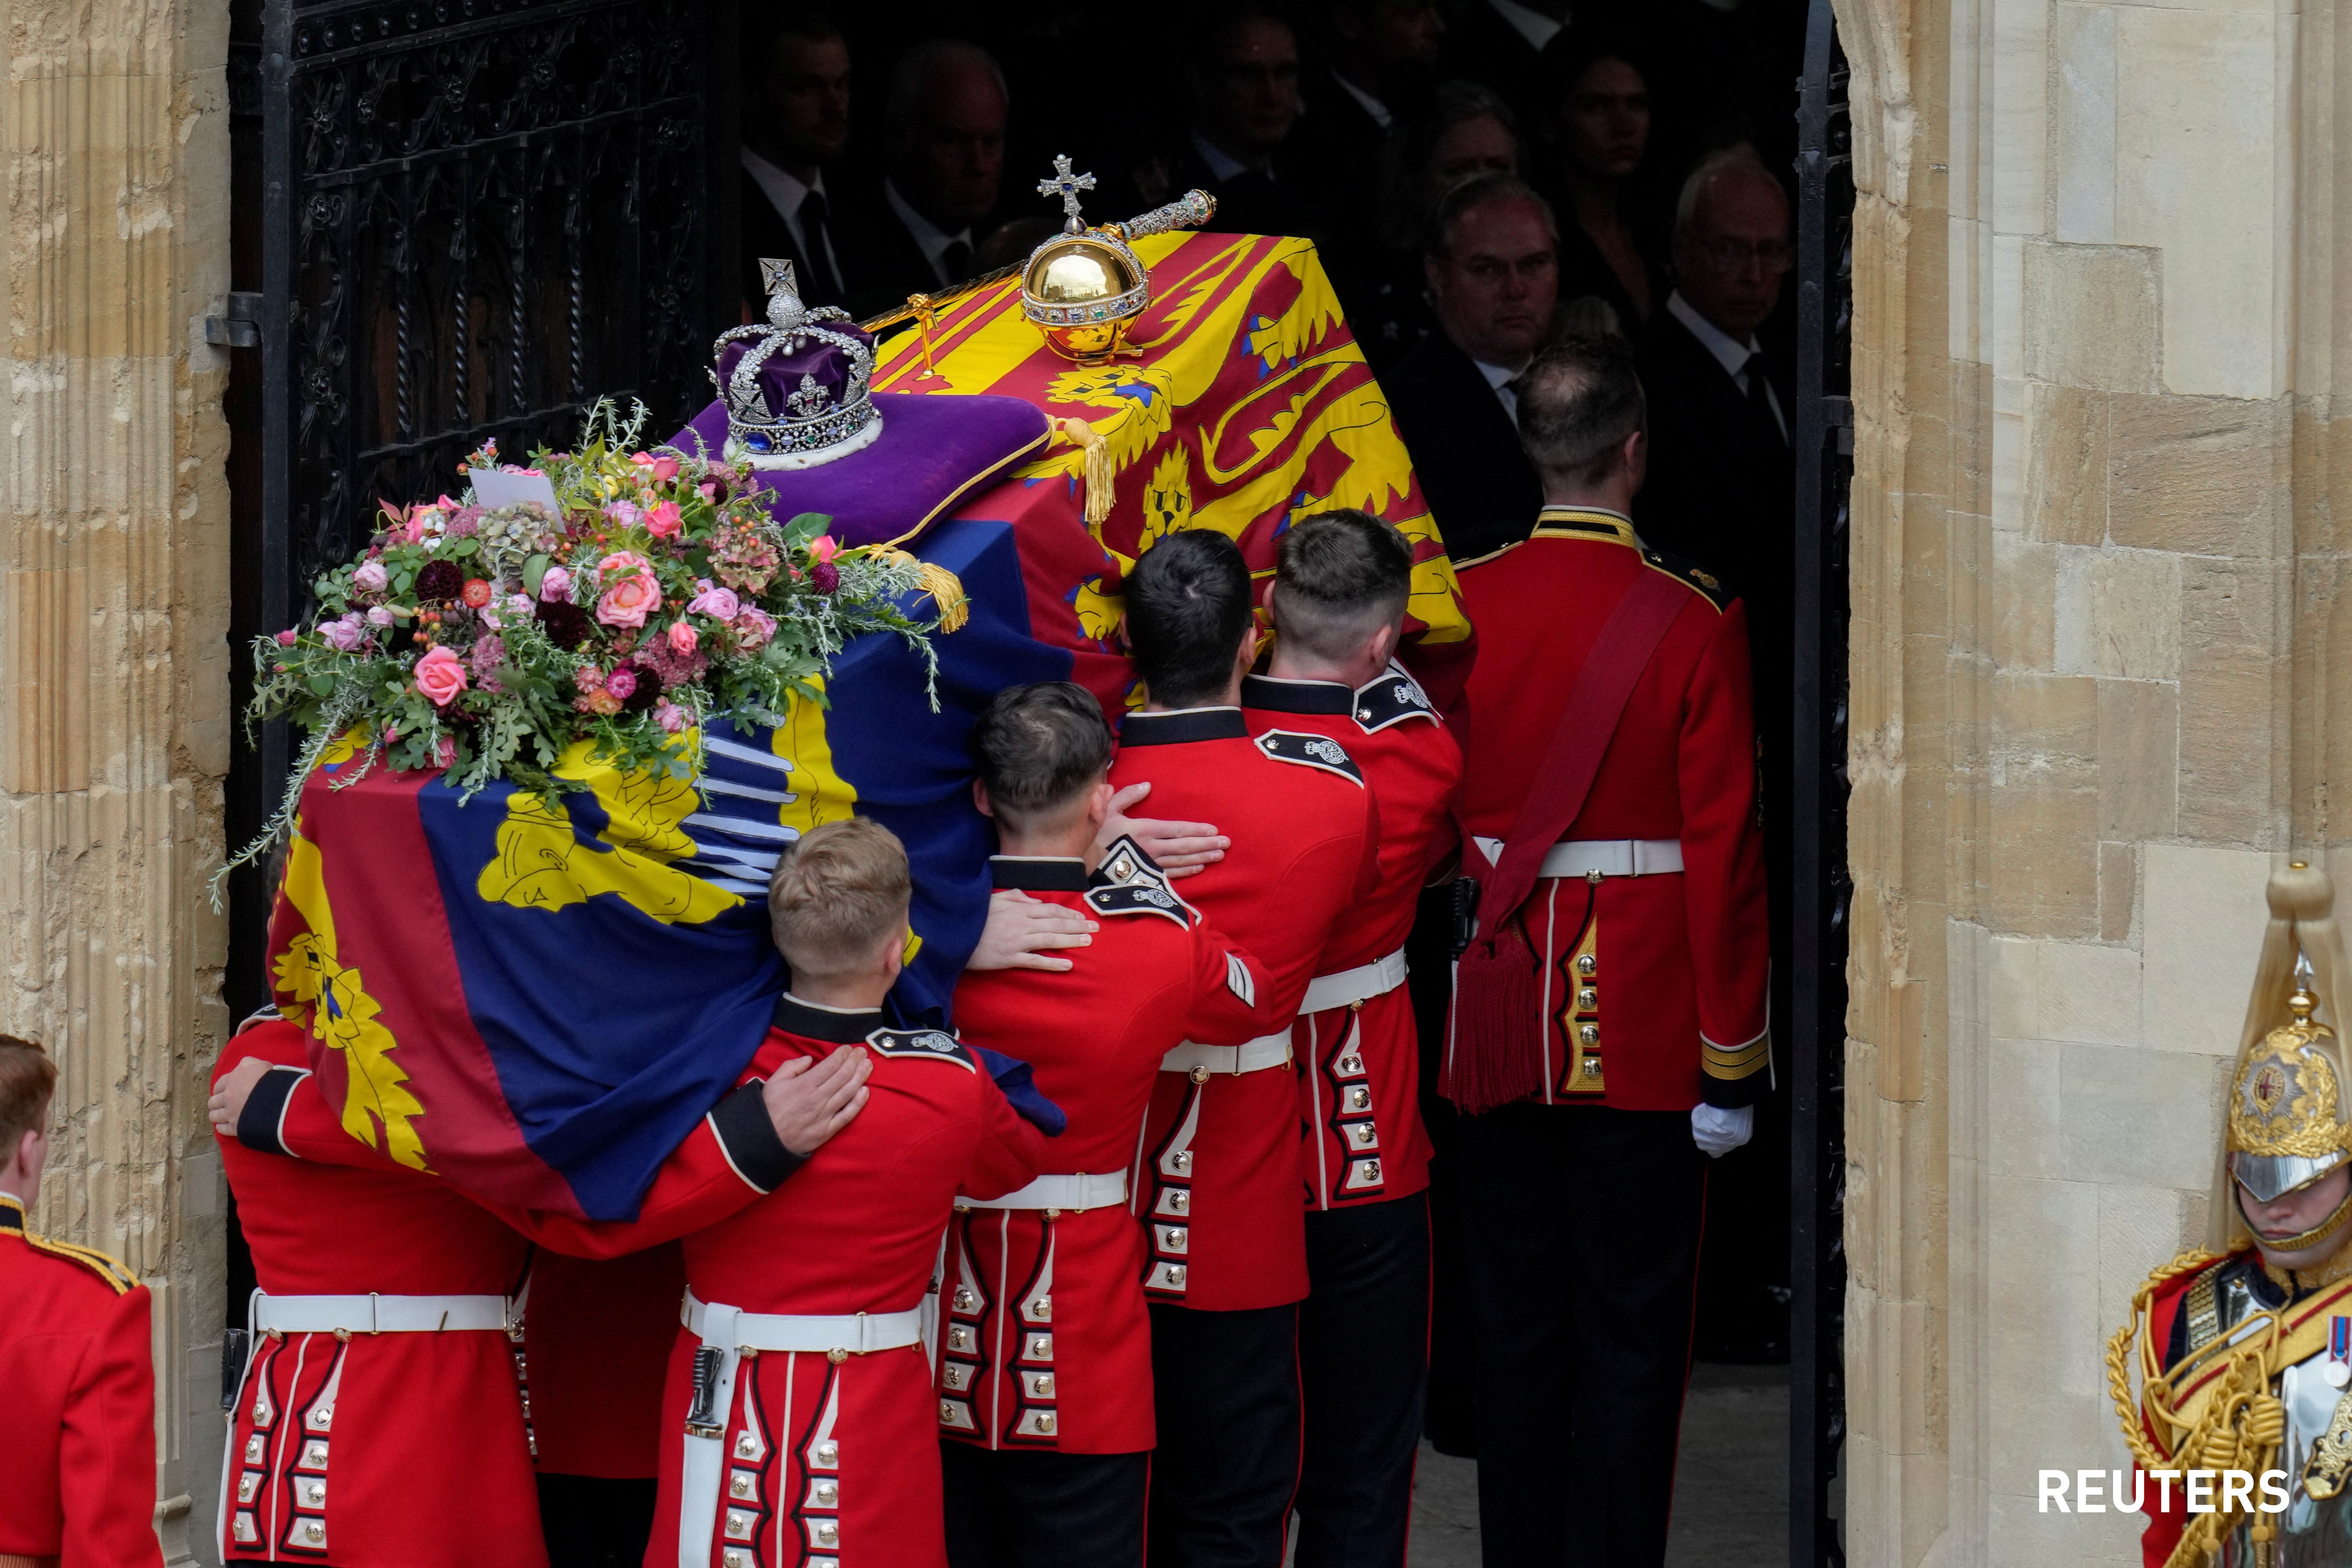 REUTERS - สมเด็จพระราชินีนาถเอลิซาเบธที้ 2 งานพระบรมศพ วินด์เซอร์ ฝังพระบรมศพ